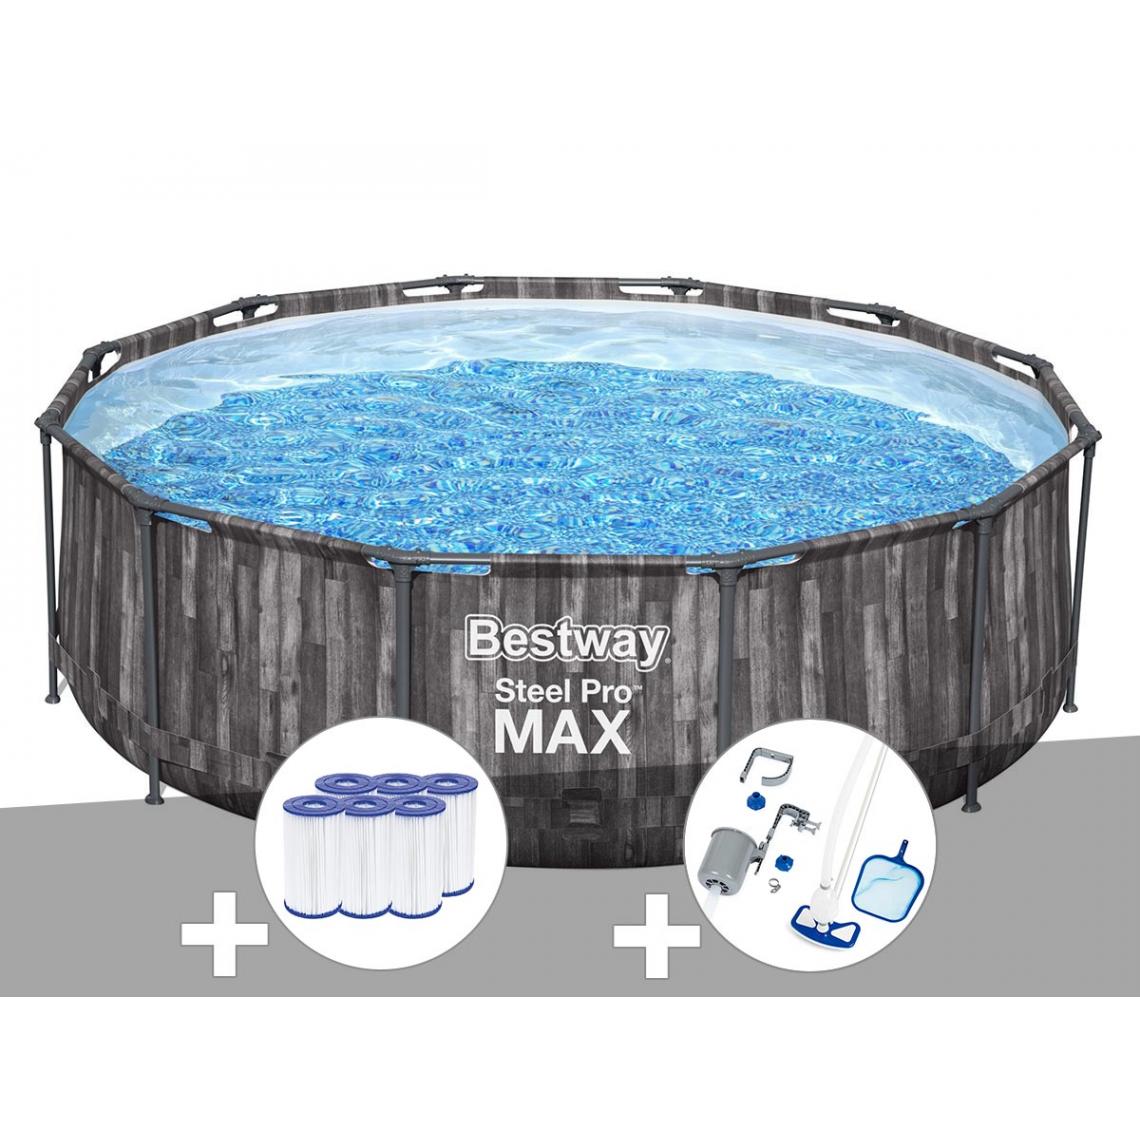 Bestway - Kit piscine tubulaire ronde Bestway Steel Pro Max décor bois 3,66 x 1,00 m + 6 cartouches de filtration + Kit d'entretien Deluxe - Piscine Tubulaire